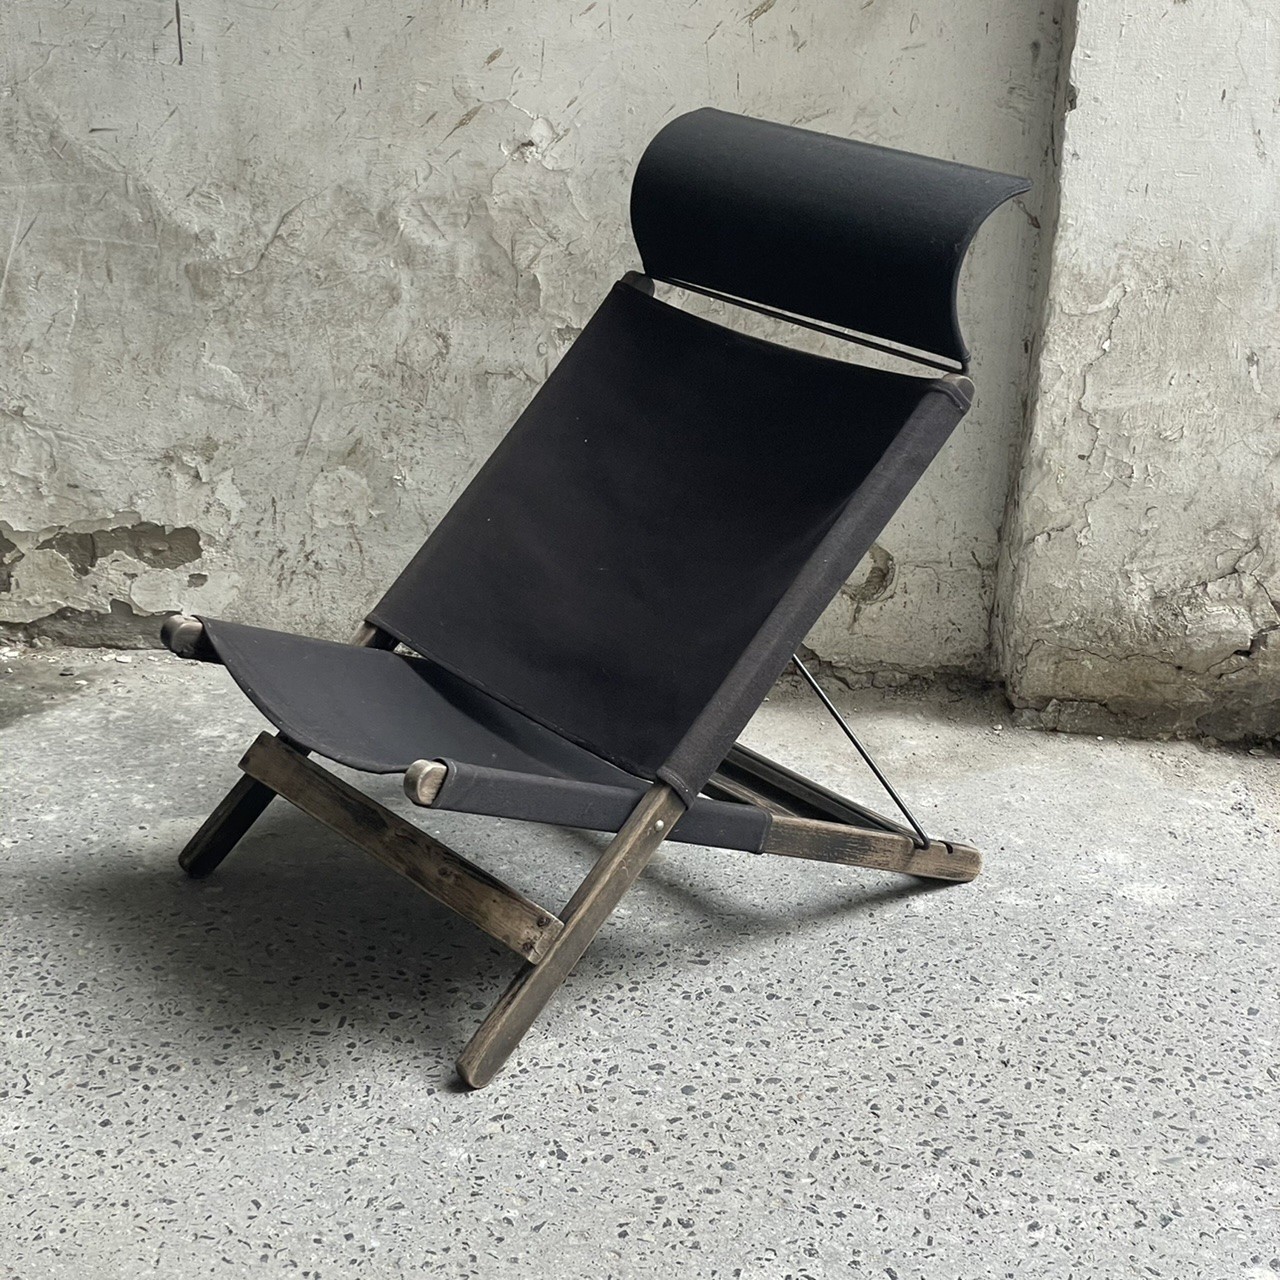 tord bjorklund vintage ikea sunbed post modern chair design classic